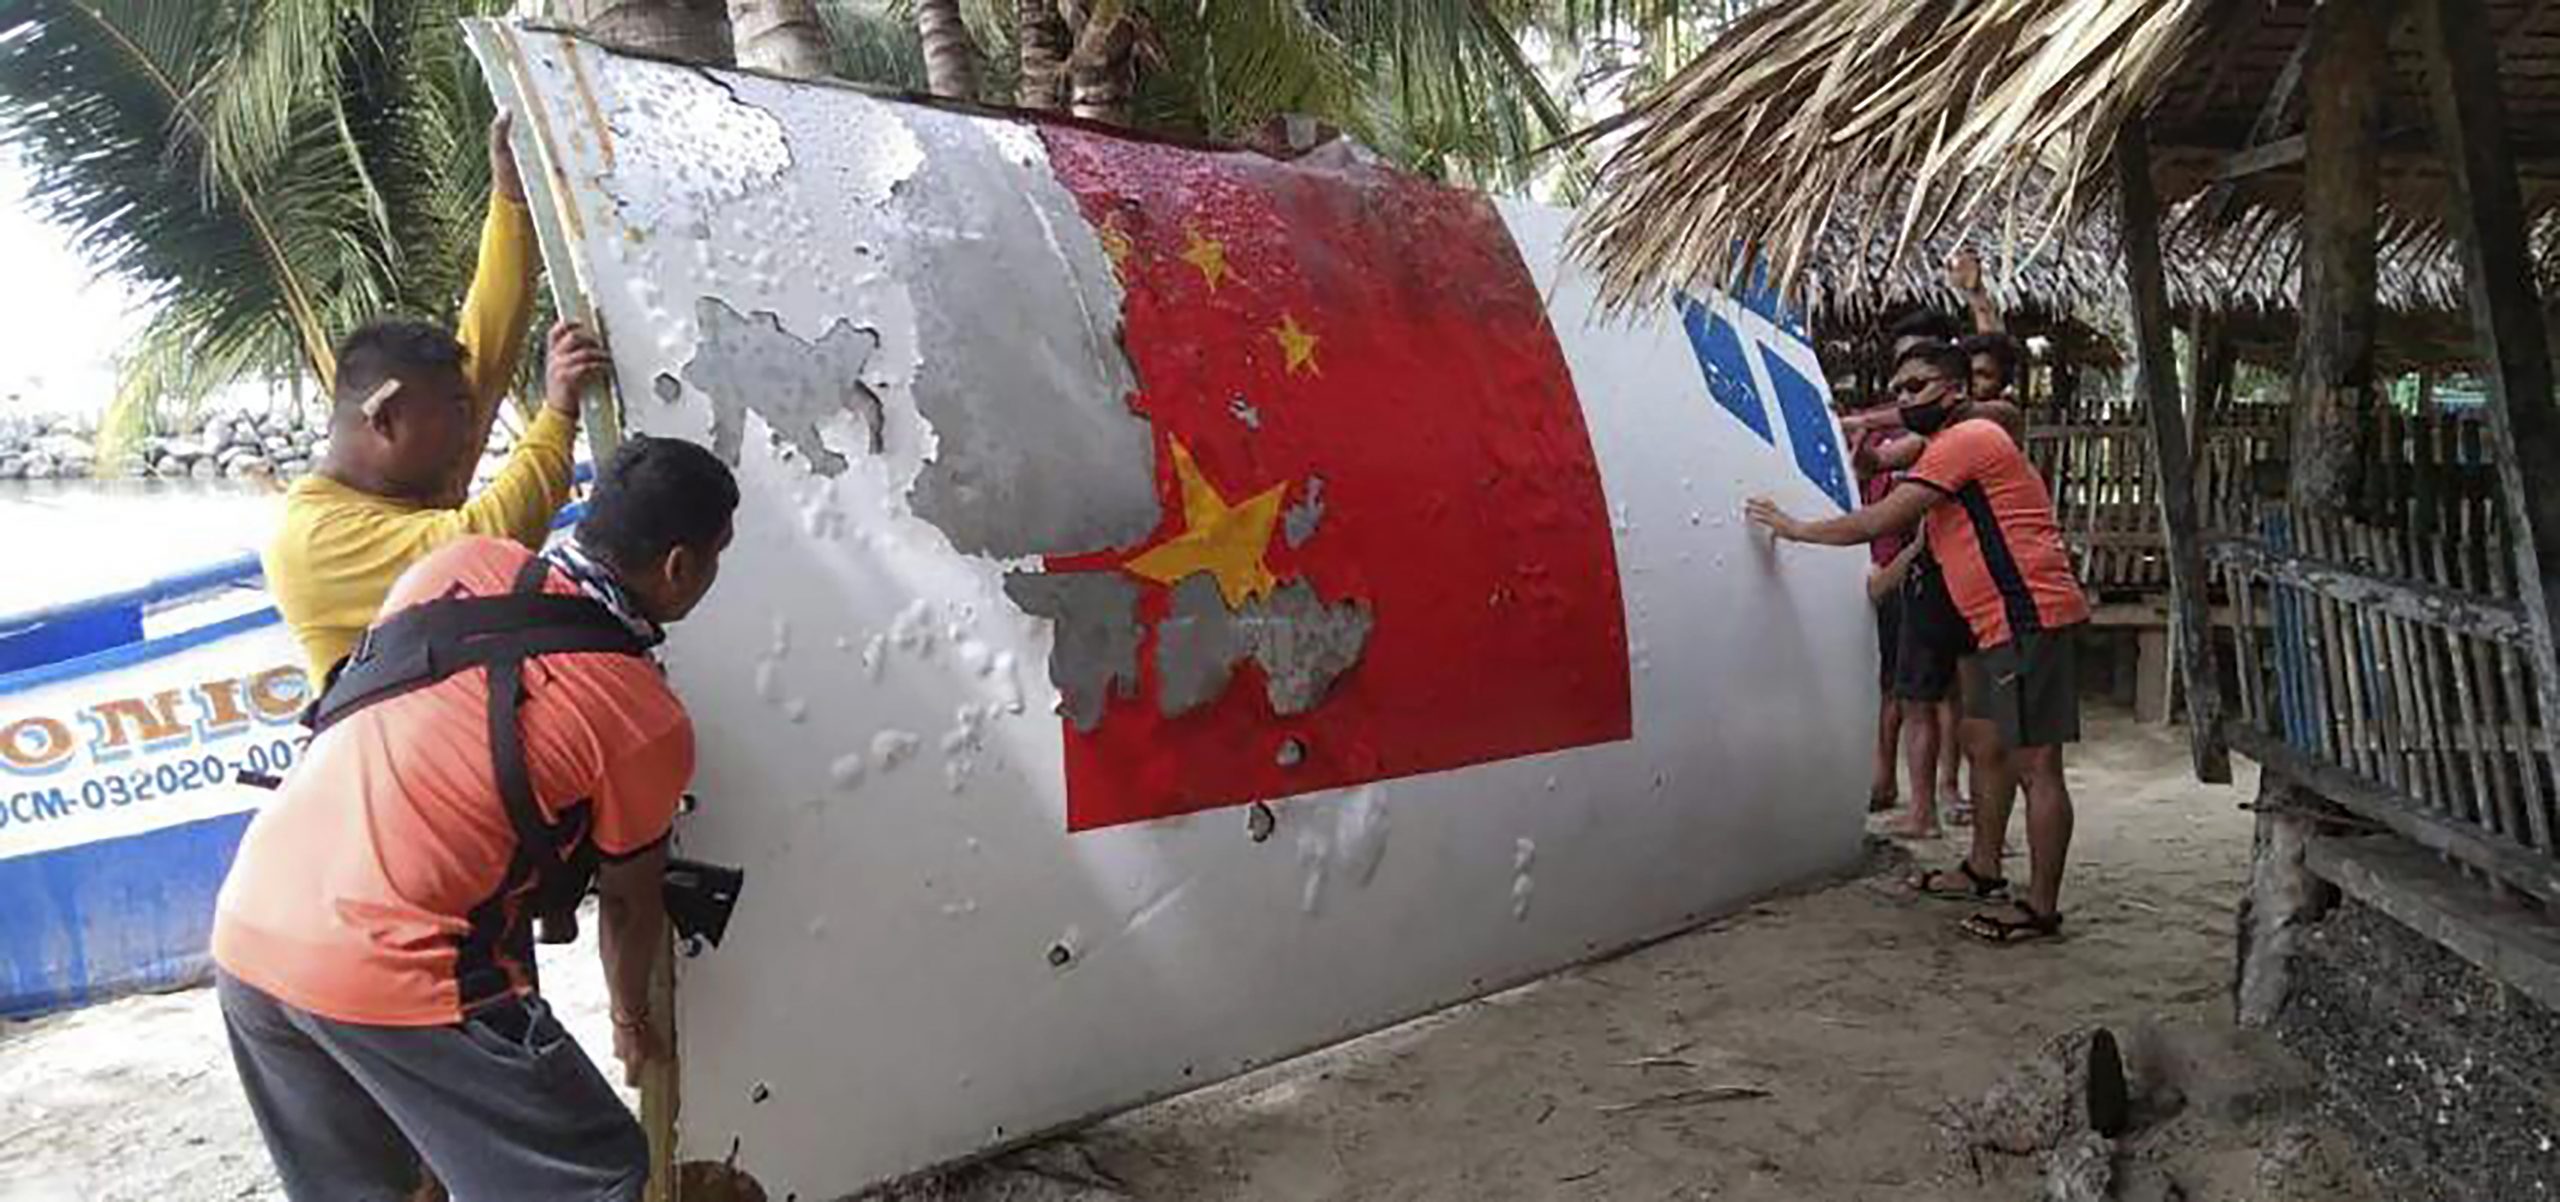 菲方:中国海警从菲海军强行扣押疑似火箭残骸